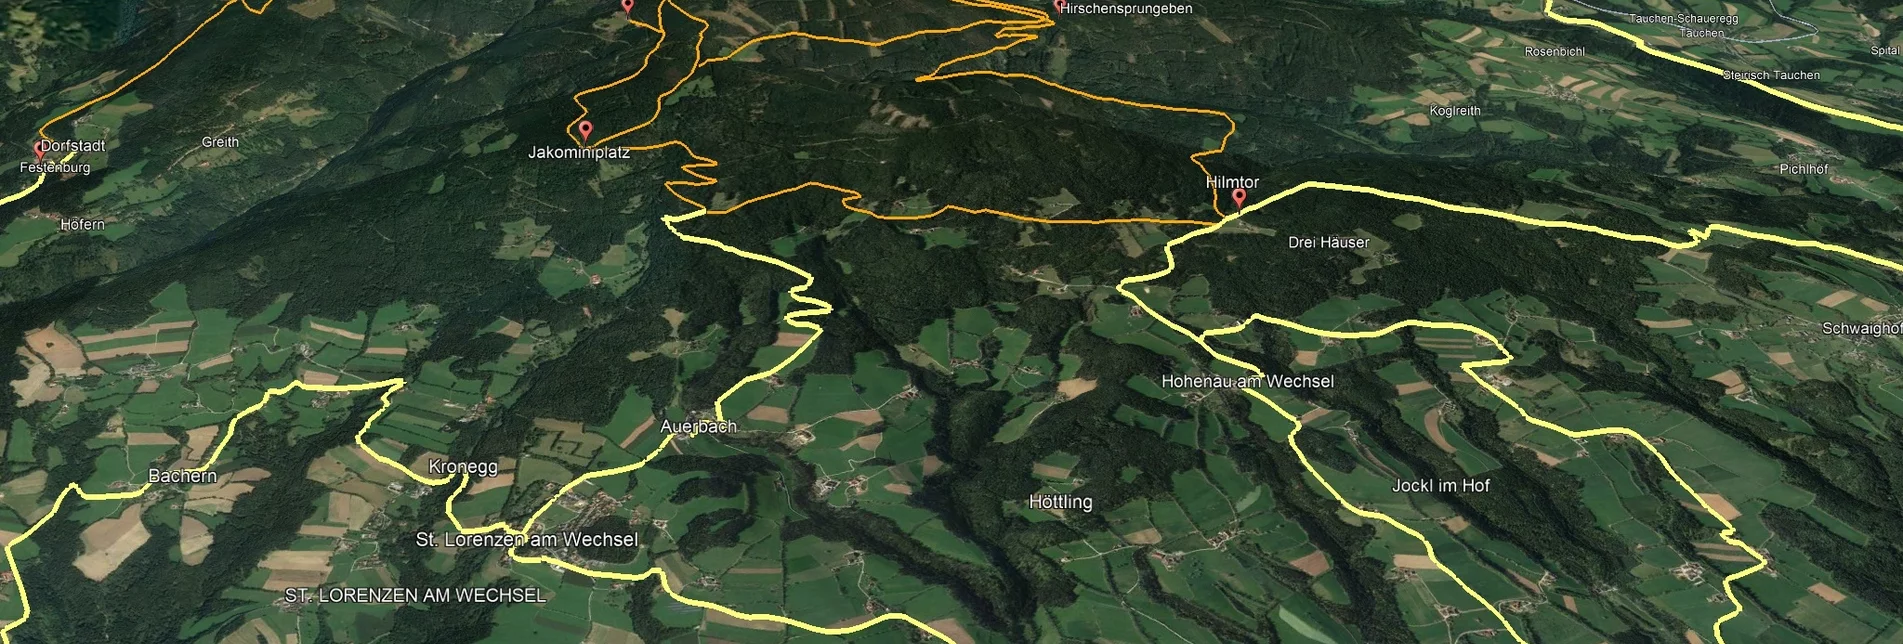 Mountain Biking PREVIEW Styrian Wexl Trails - feeder road from Festenburg to Dorfstatt - Touren-Impression #1 | © Verein Tourismusentwicklung Steirischer Wechsel